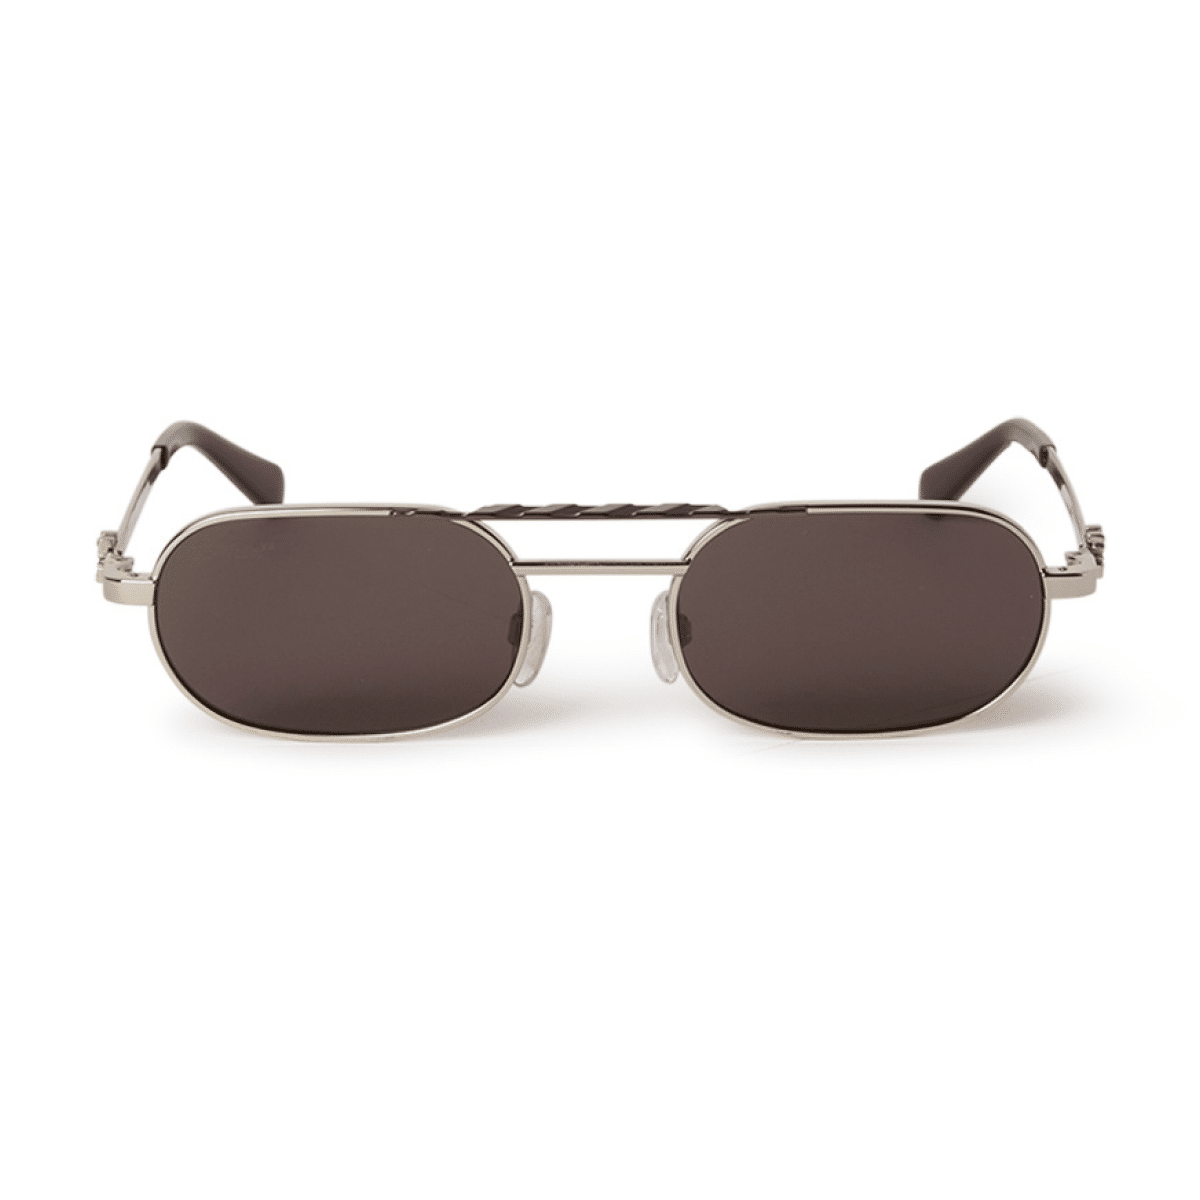 Off-White BALTIMORE Sunglasses